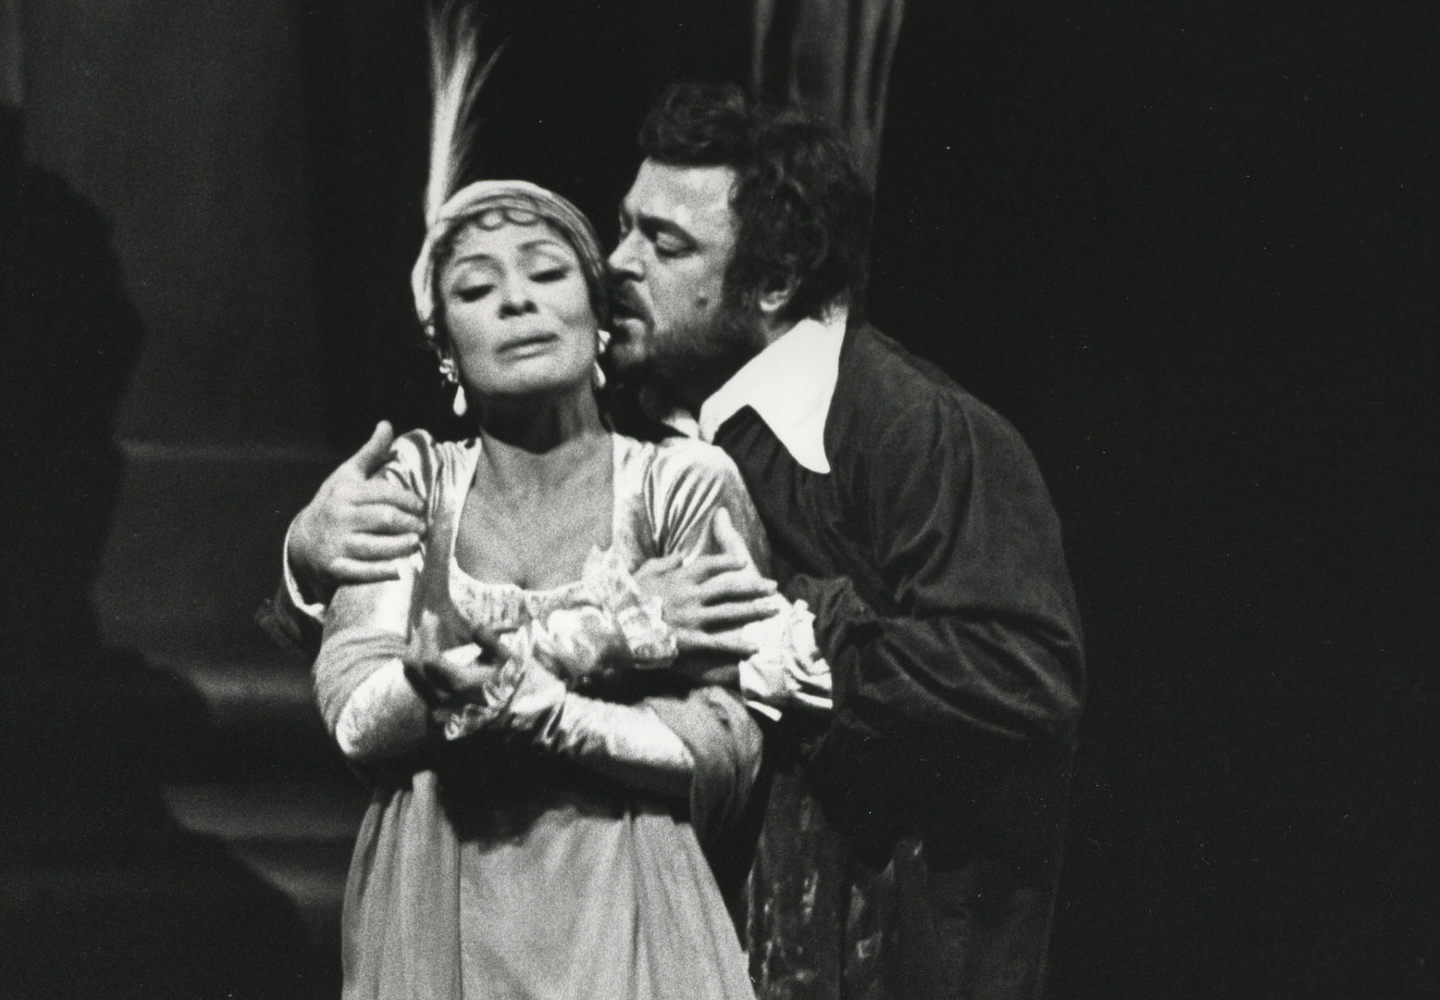 Tosca – Nightly Met Opera streams